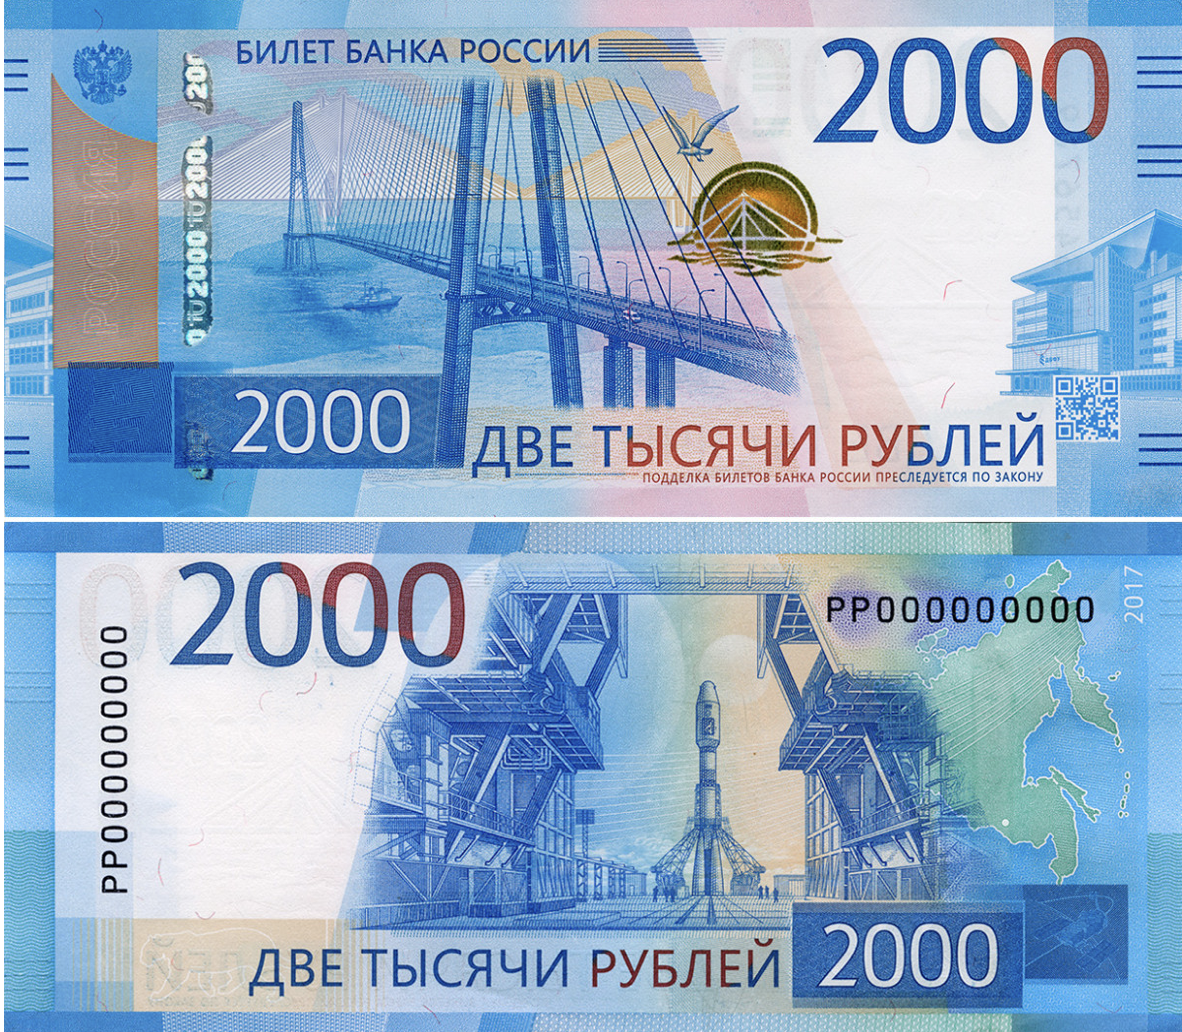 2000 Рублей. Купюра 2000. 2000 Рублей банкнота. Купюра 2000 рублей фото.